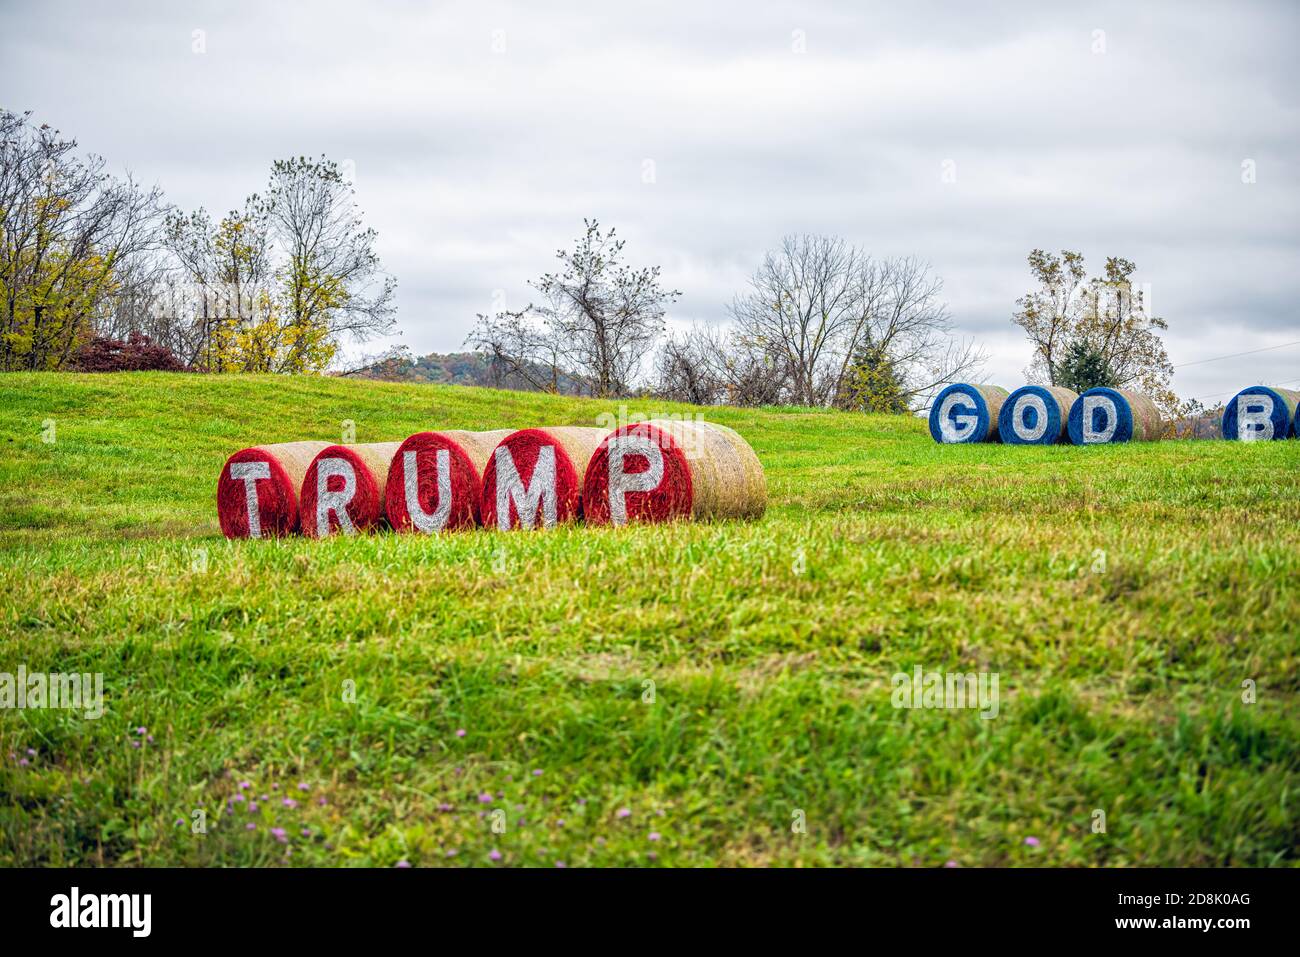 Washington, USA - 27. Oktober 2020: Gott segne Amerika und Donald Trump Slogan Text während der US-Präsidentschaftswahl auf Heuballen in Virginia ru gemalt Stockfoto